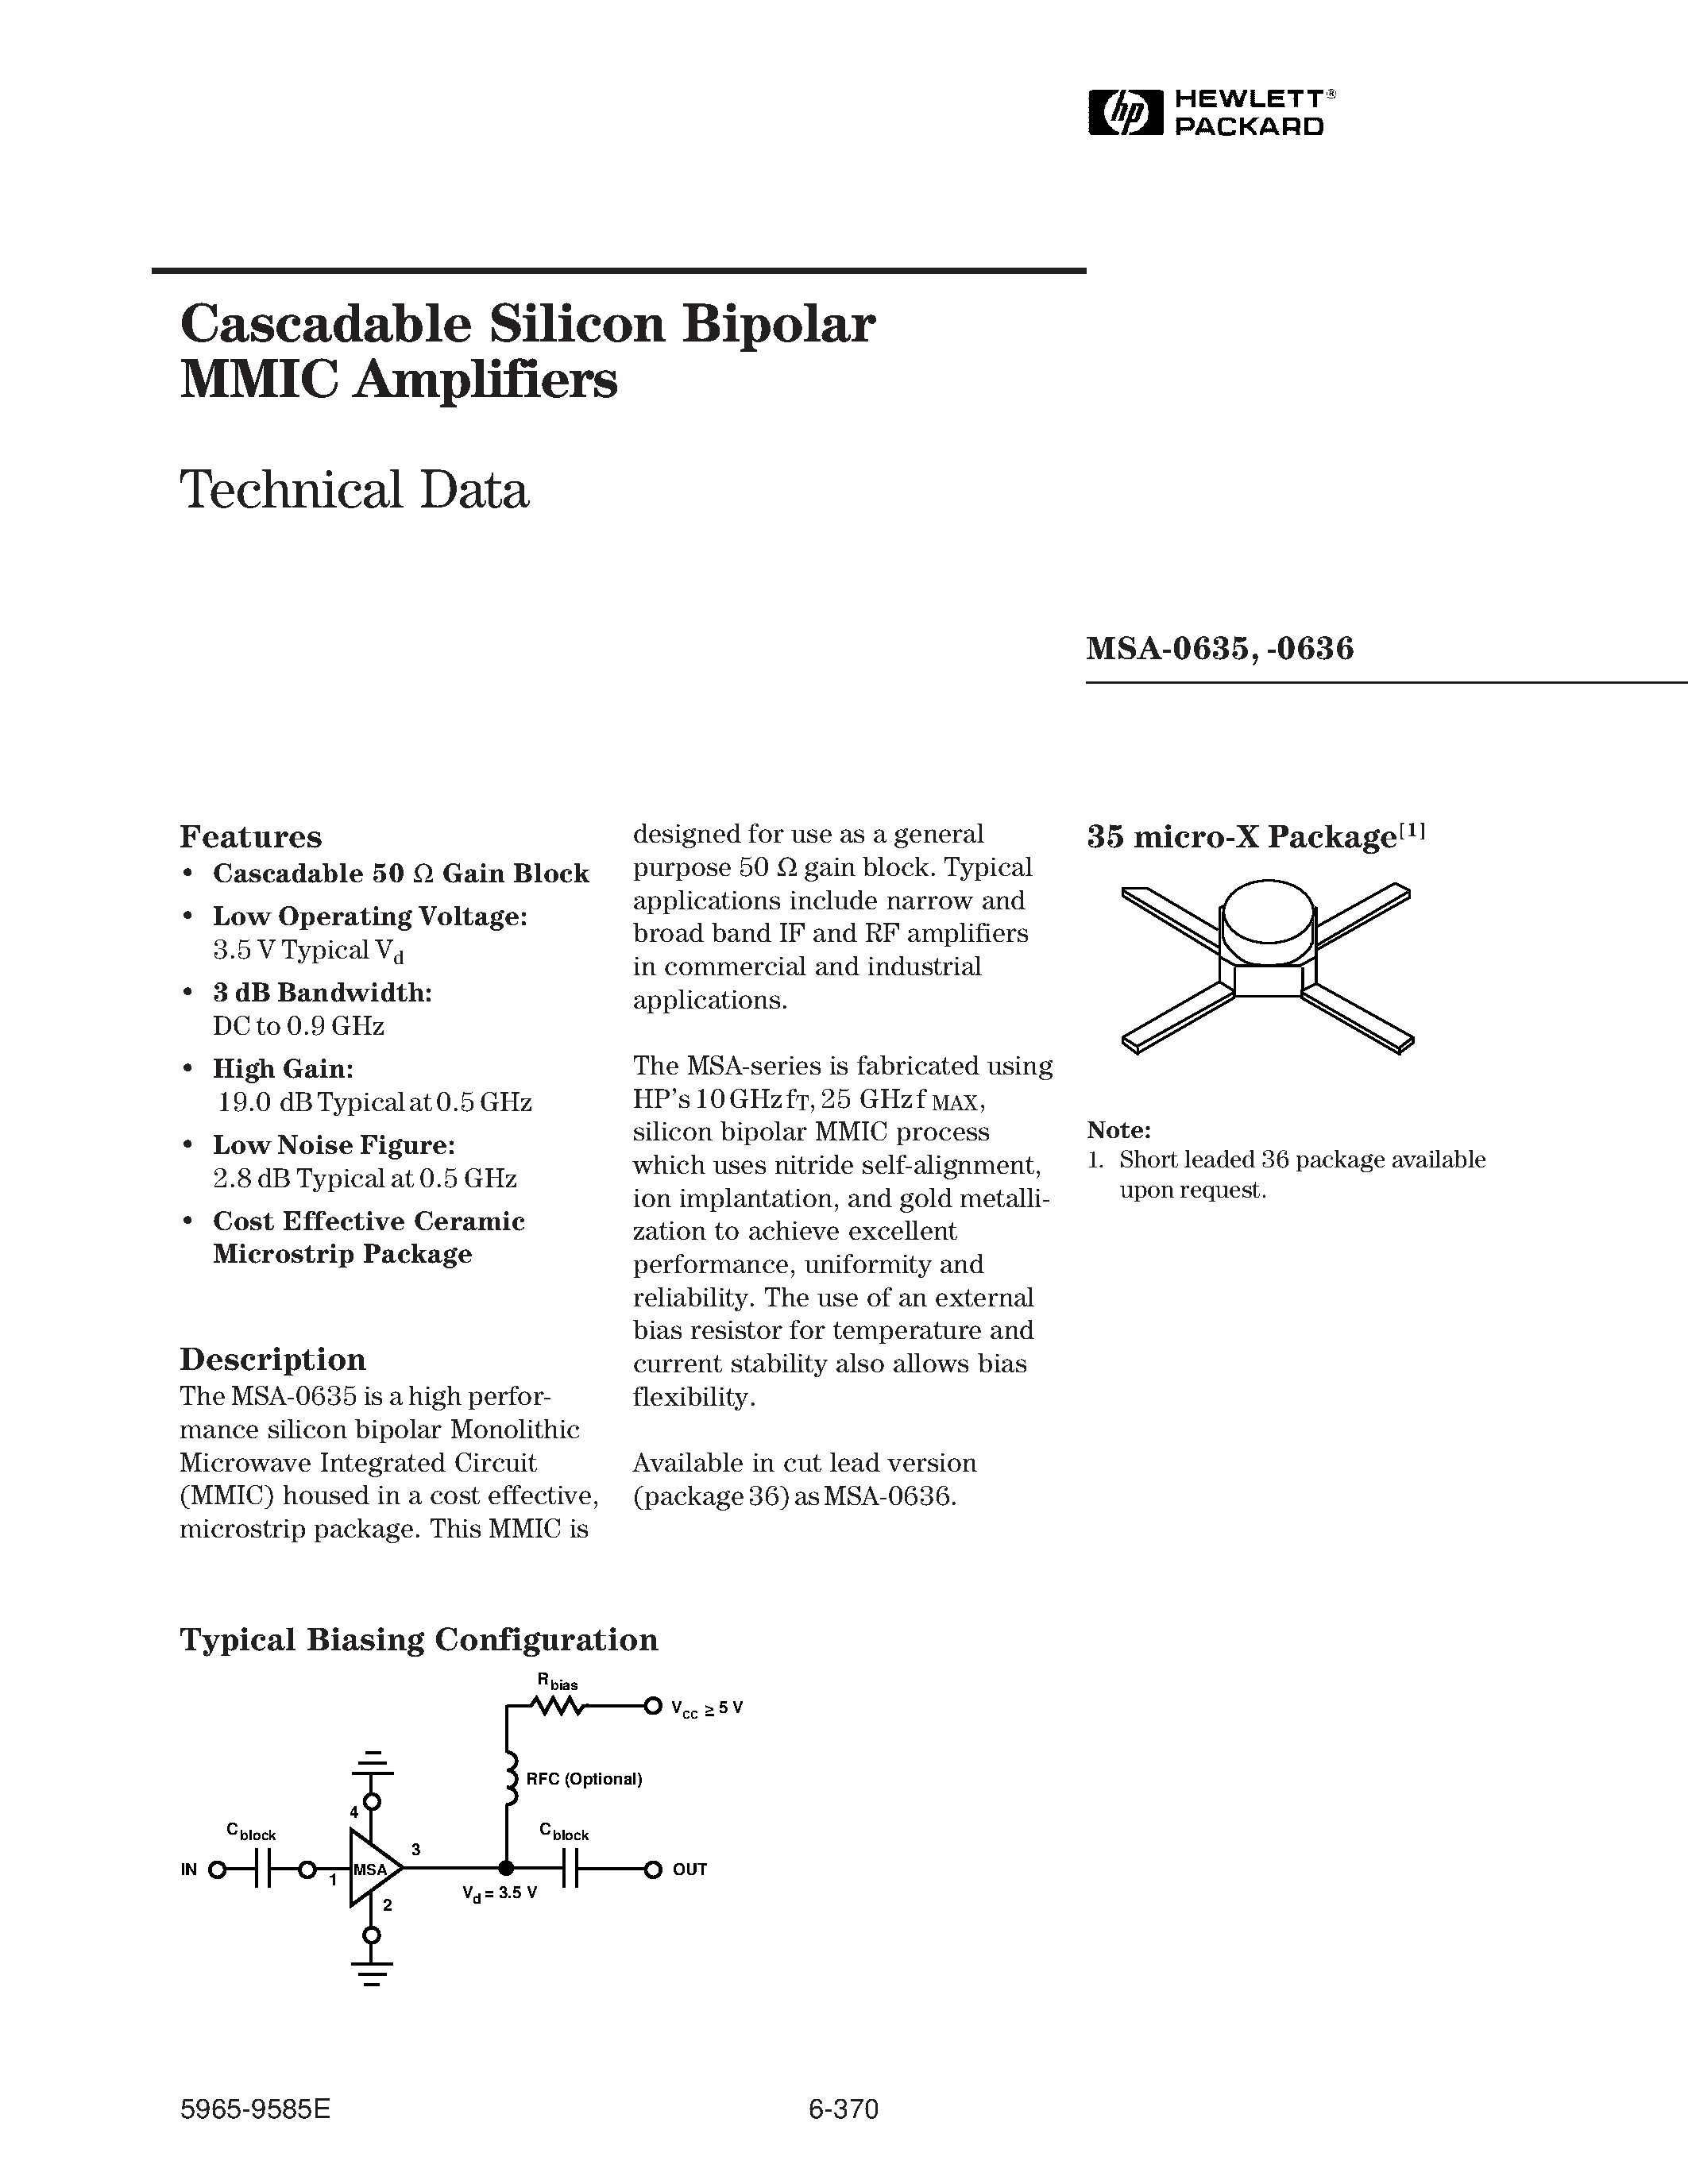 Даташит MSA-0635 - (MSA-0635 / MSA-0636) Cascadable Silicon Bipolar MMIC Amplifier страница 1